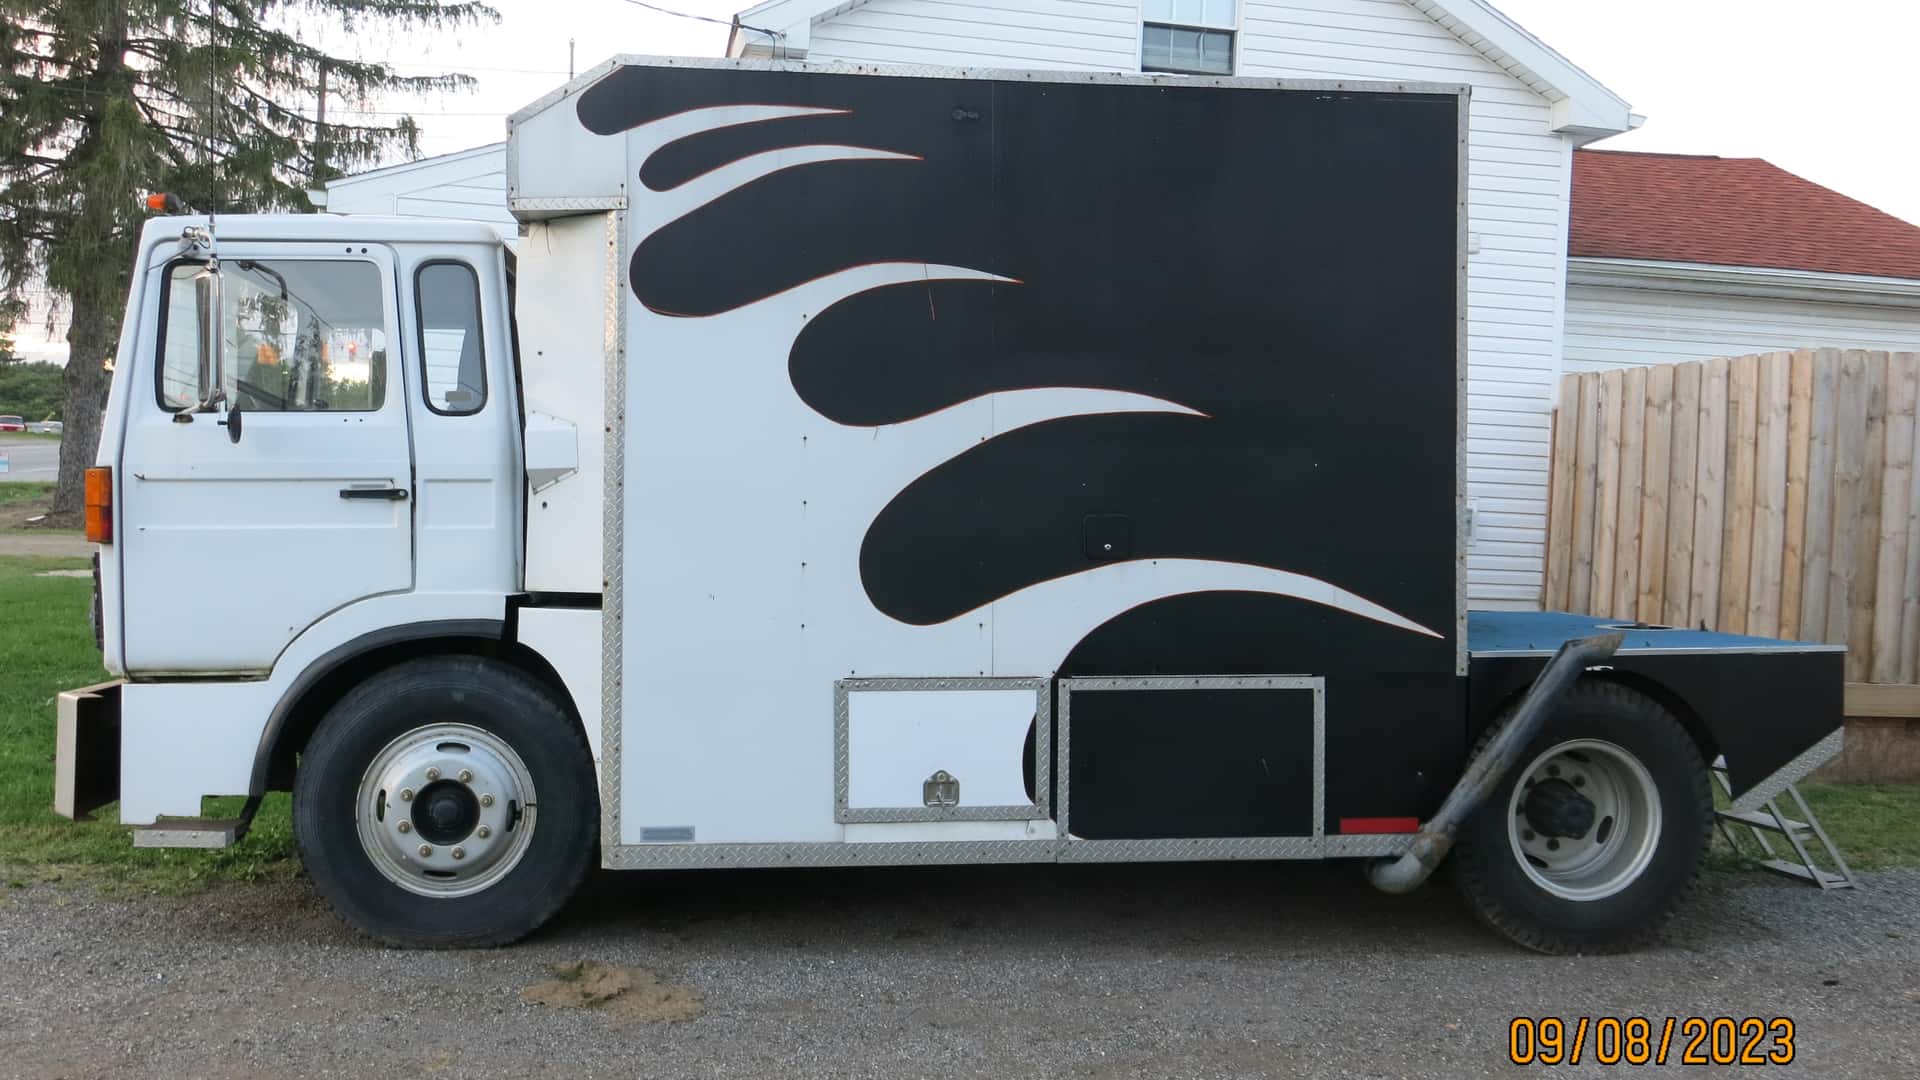 volvo semi-truck camper conversion for sale for $6,500